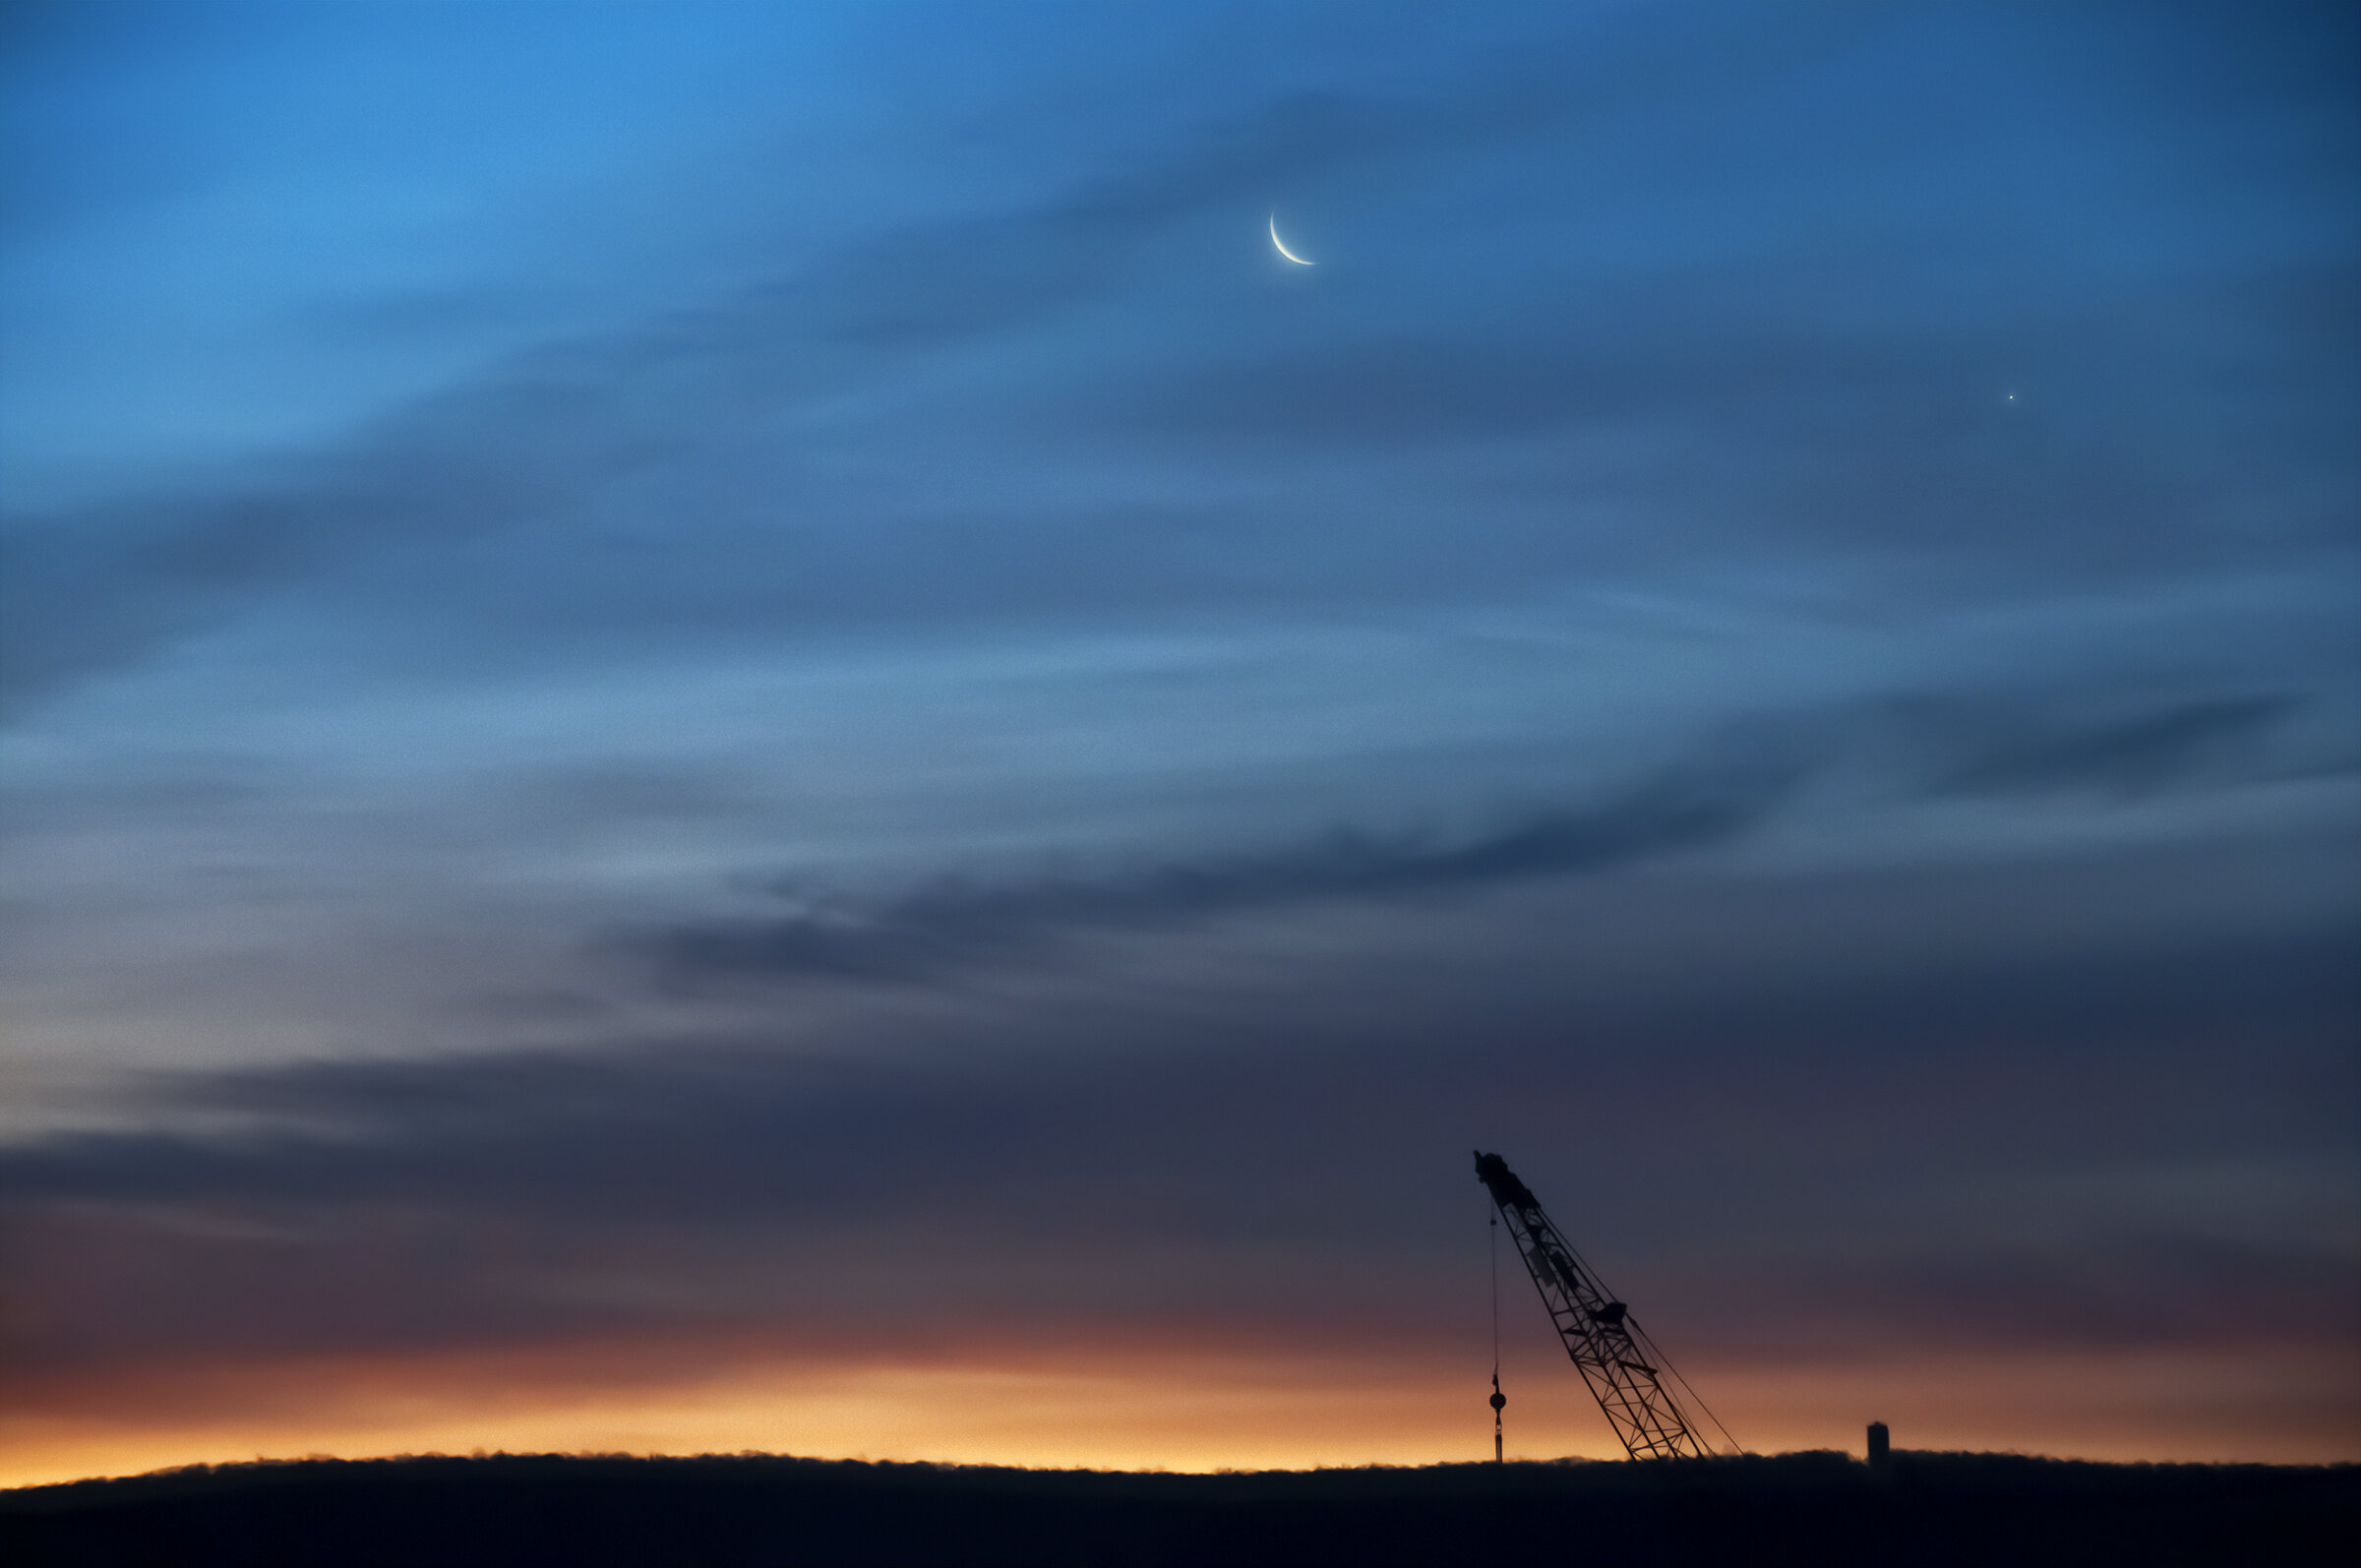 Moon, Venus, and a Crane